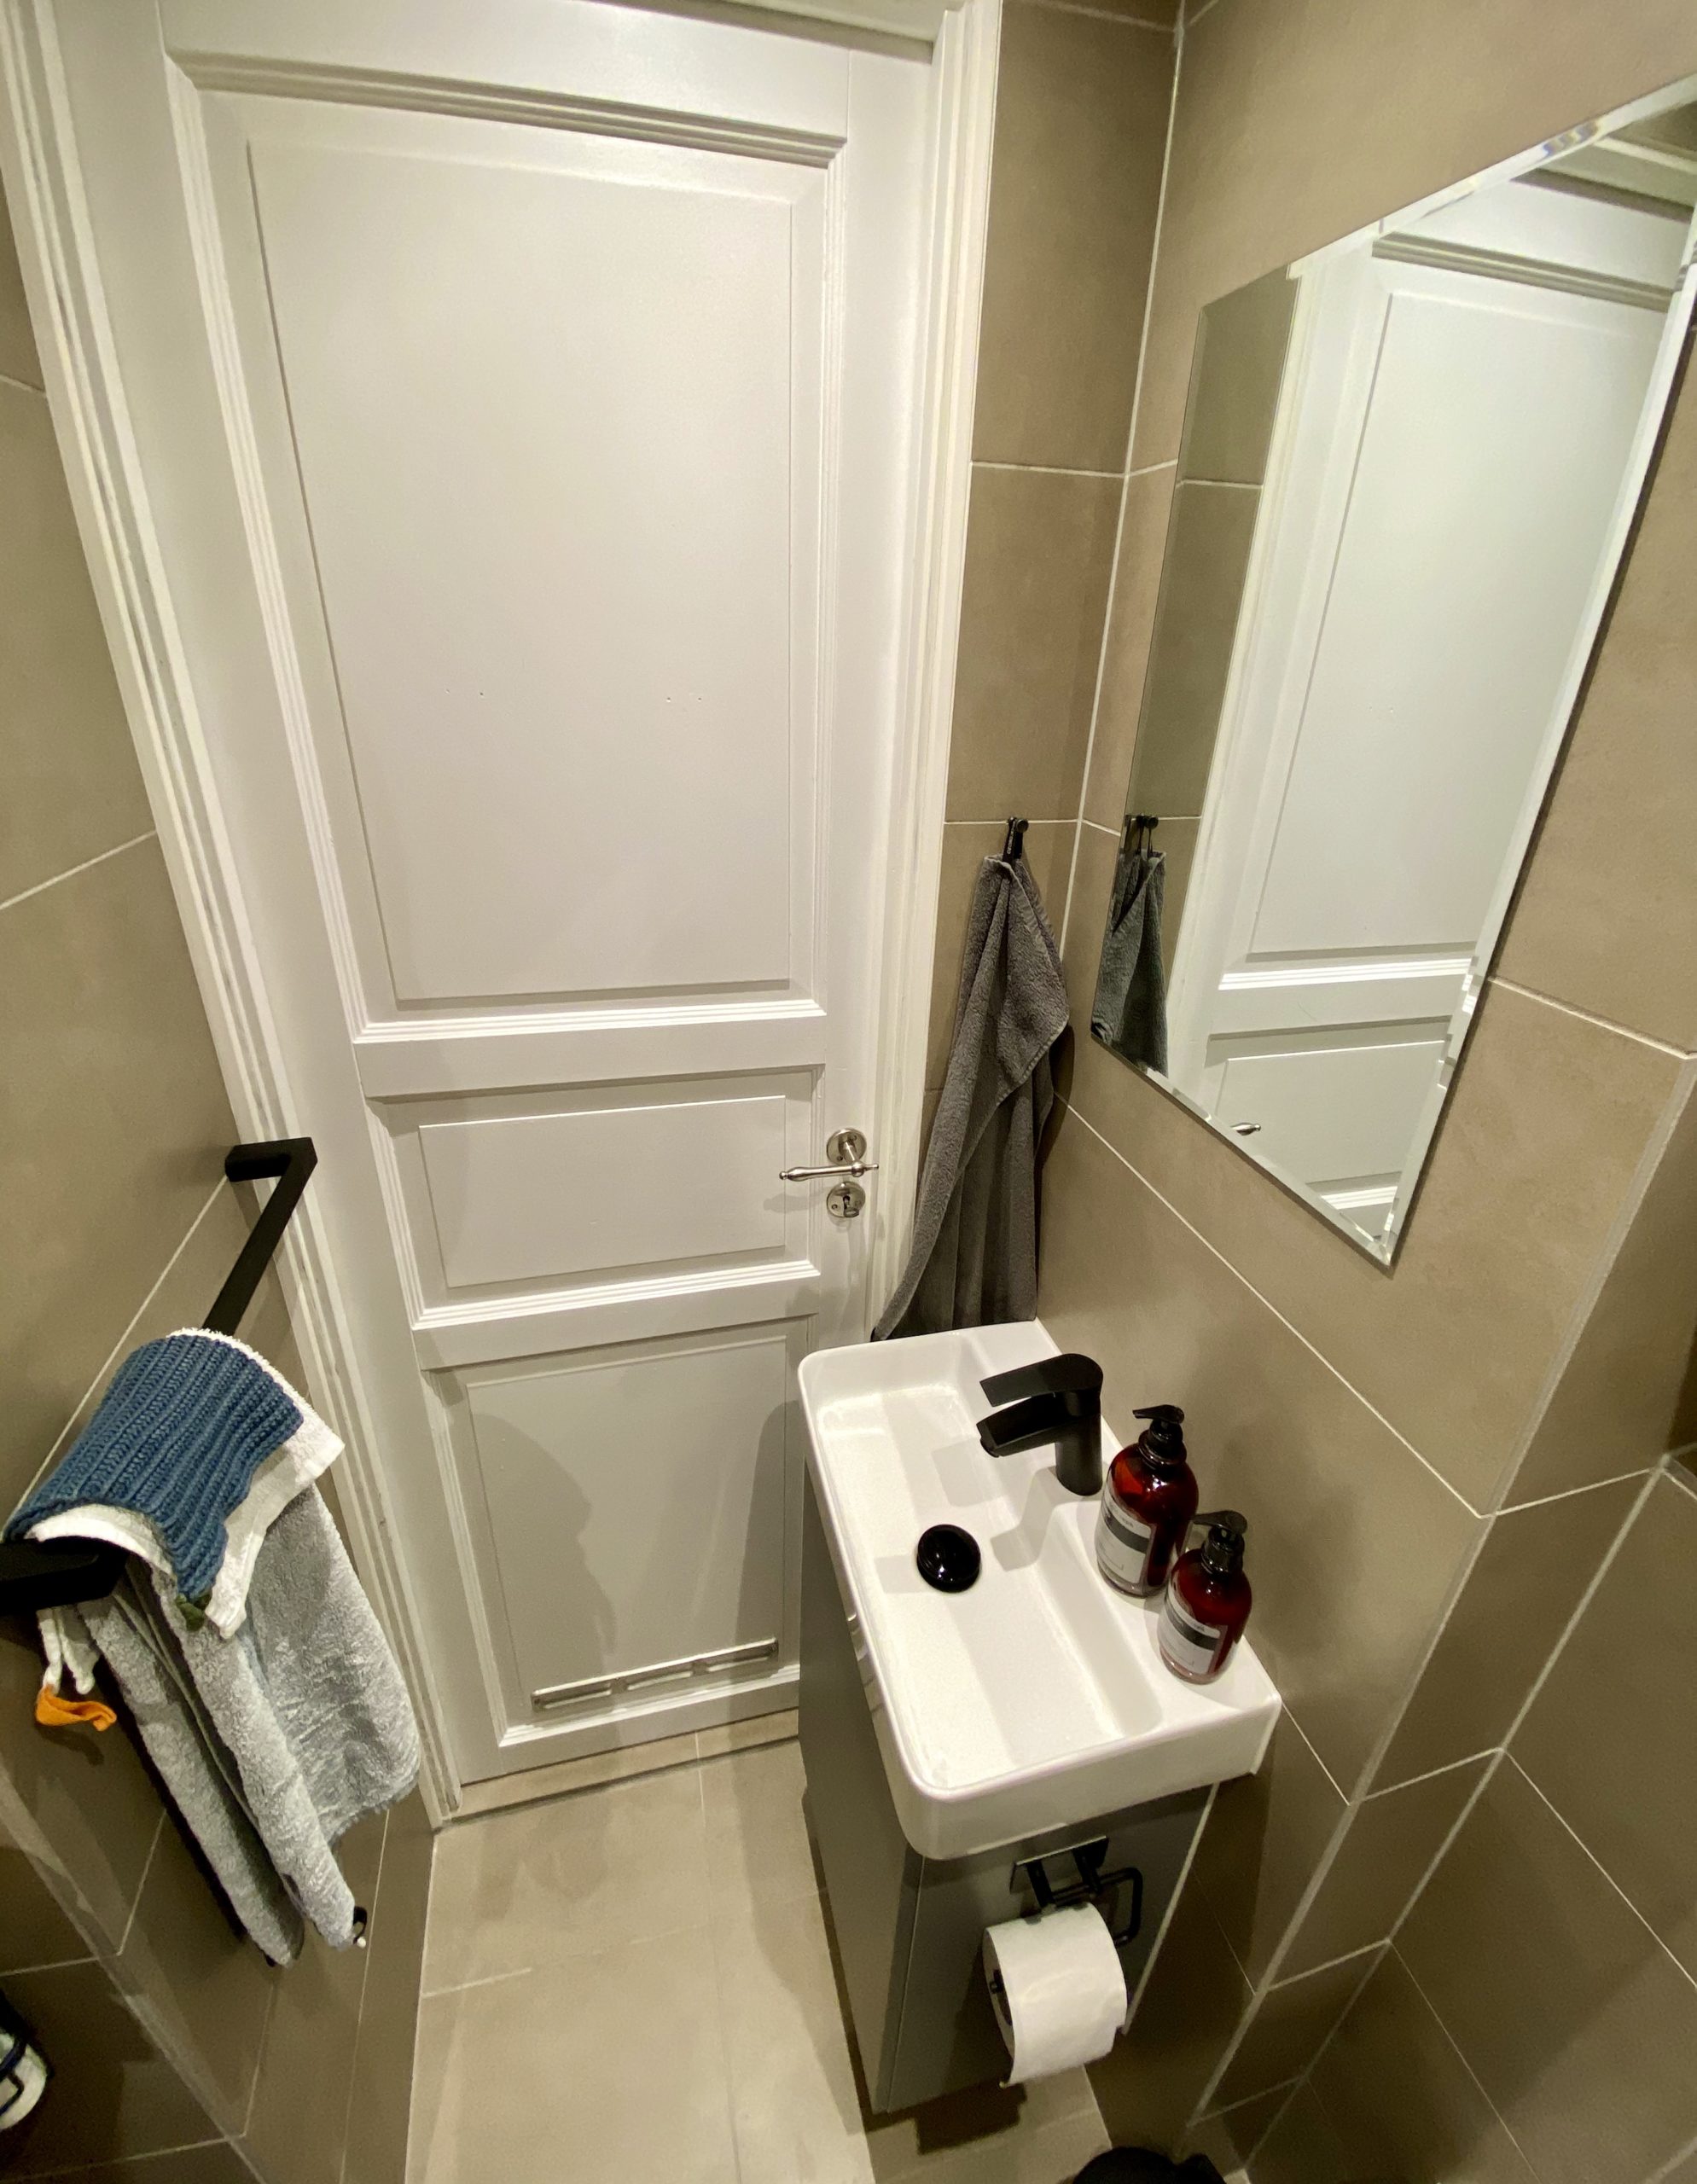 Bæredygtigt badeværelse i lille københavnerlejlighed på Frederiksberg. Høj kvalitet